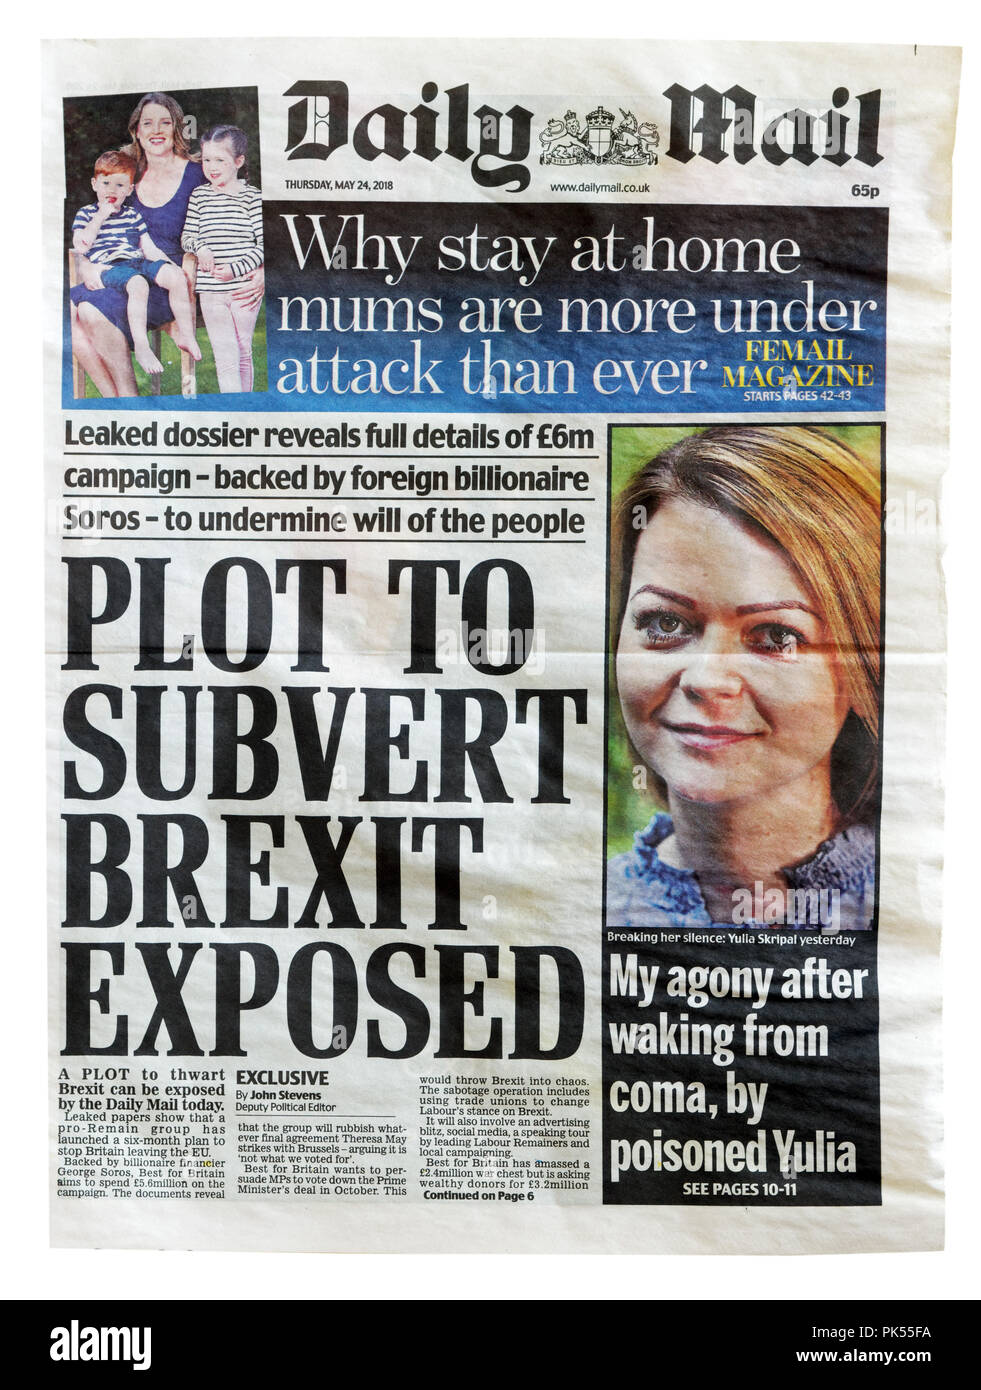 Première page du Daily Mail avec le titre complot pour renverser Brexit, exposés sur les tentatives d'arrêter Brexit et garder la Grande-Bretagne dans l'UE Banque D'Images